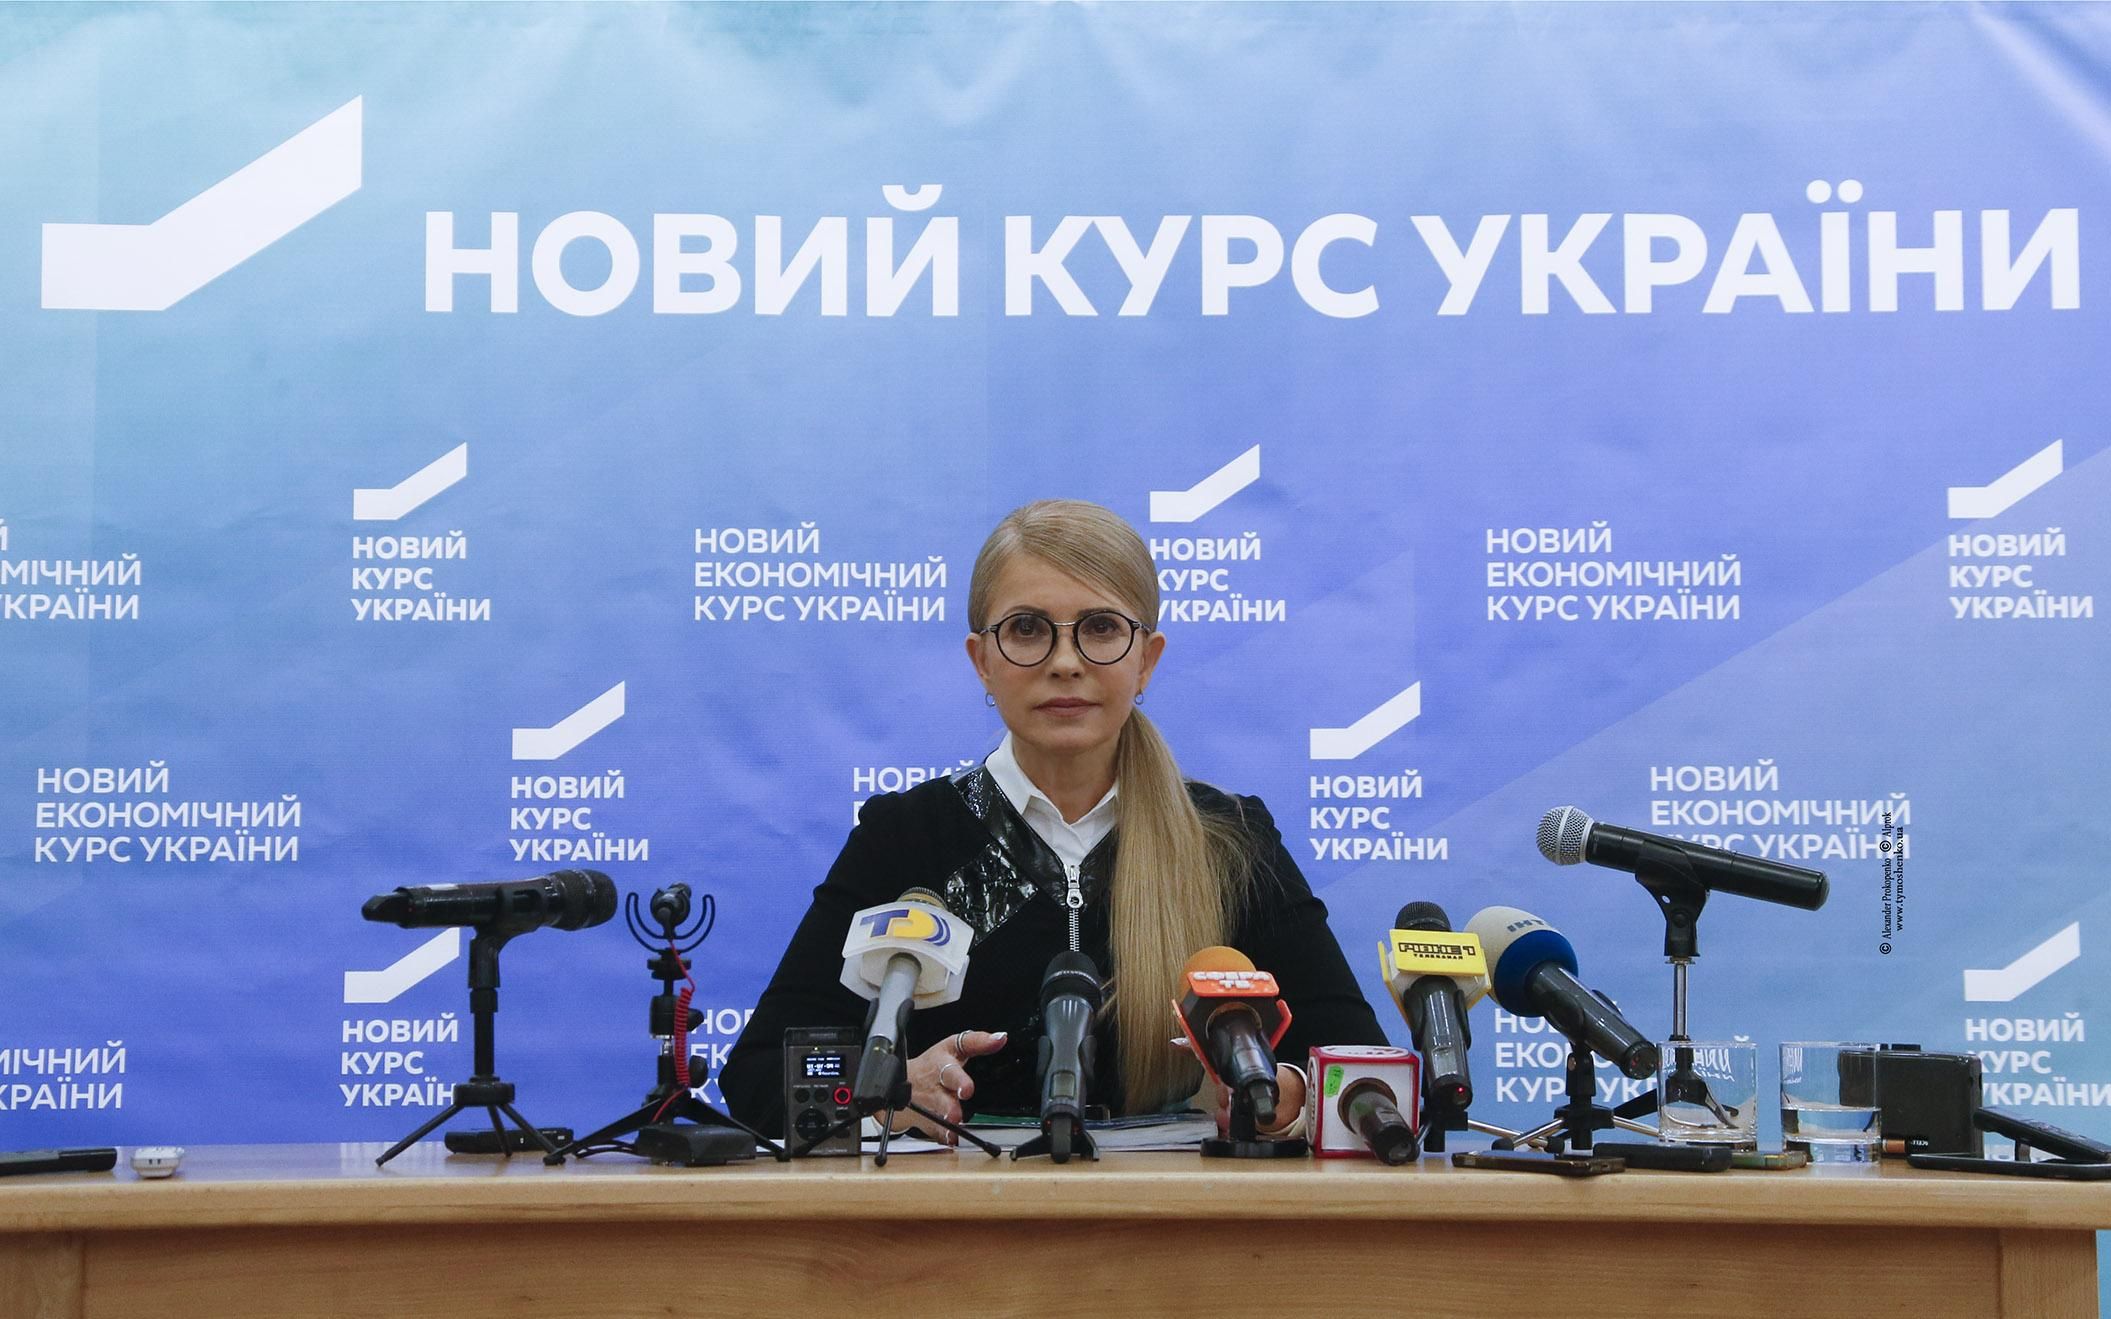 Мораторий на вырубку лесов надо вводить немедленно, – Тимошенко